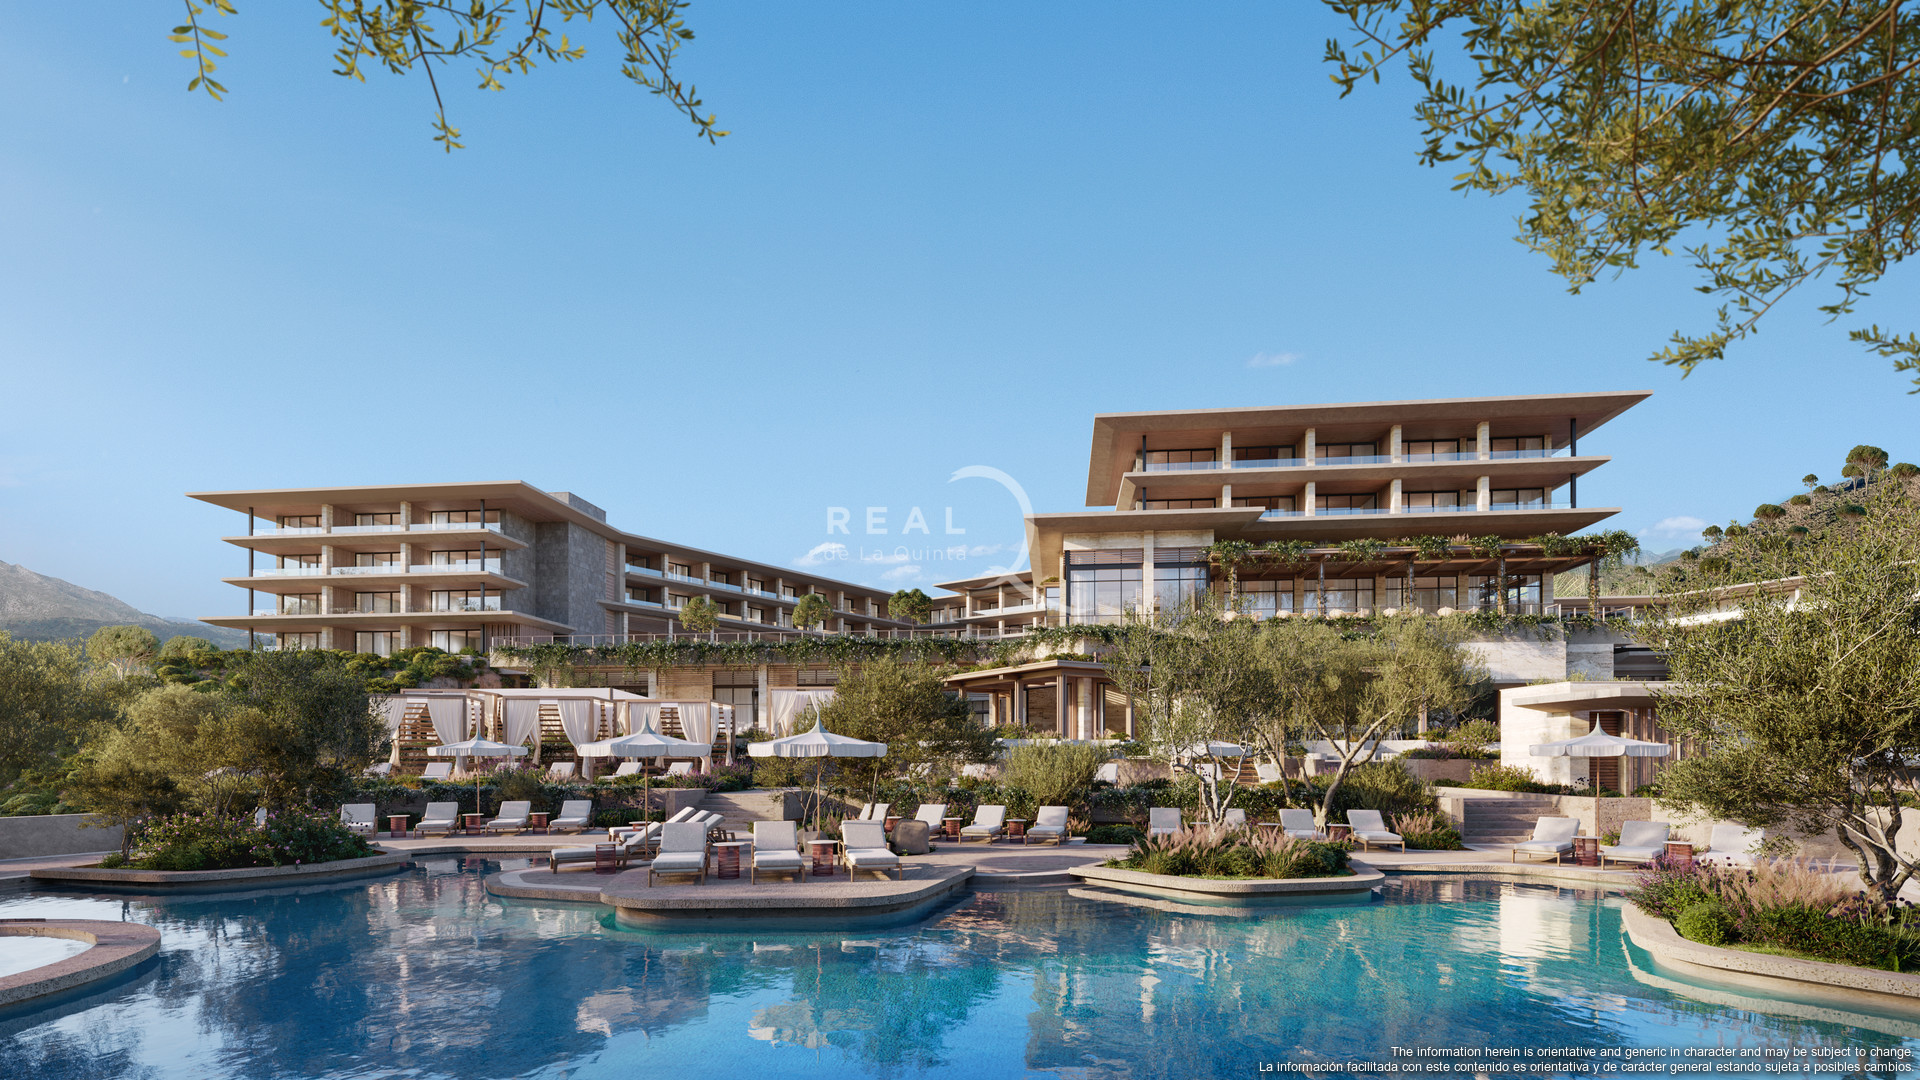 Angsana Real de La Quinta Hotel By Banyan Tree Group - Vista desde la piscina familiar (nivel jardín)